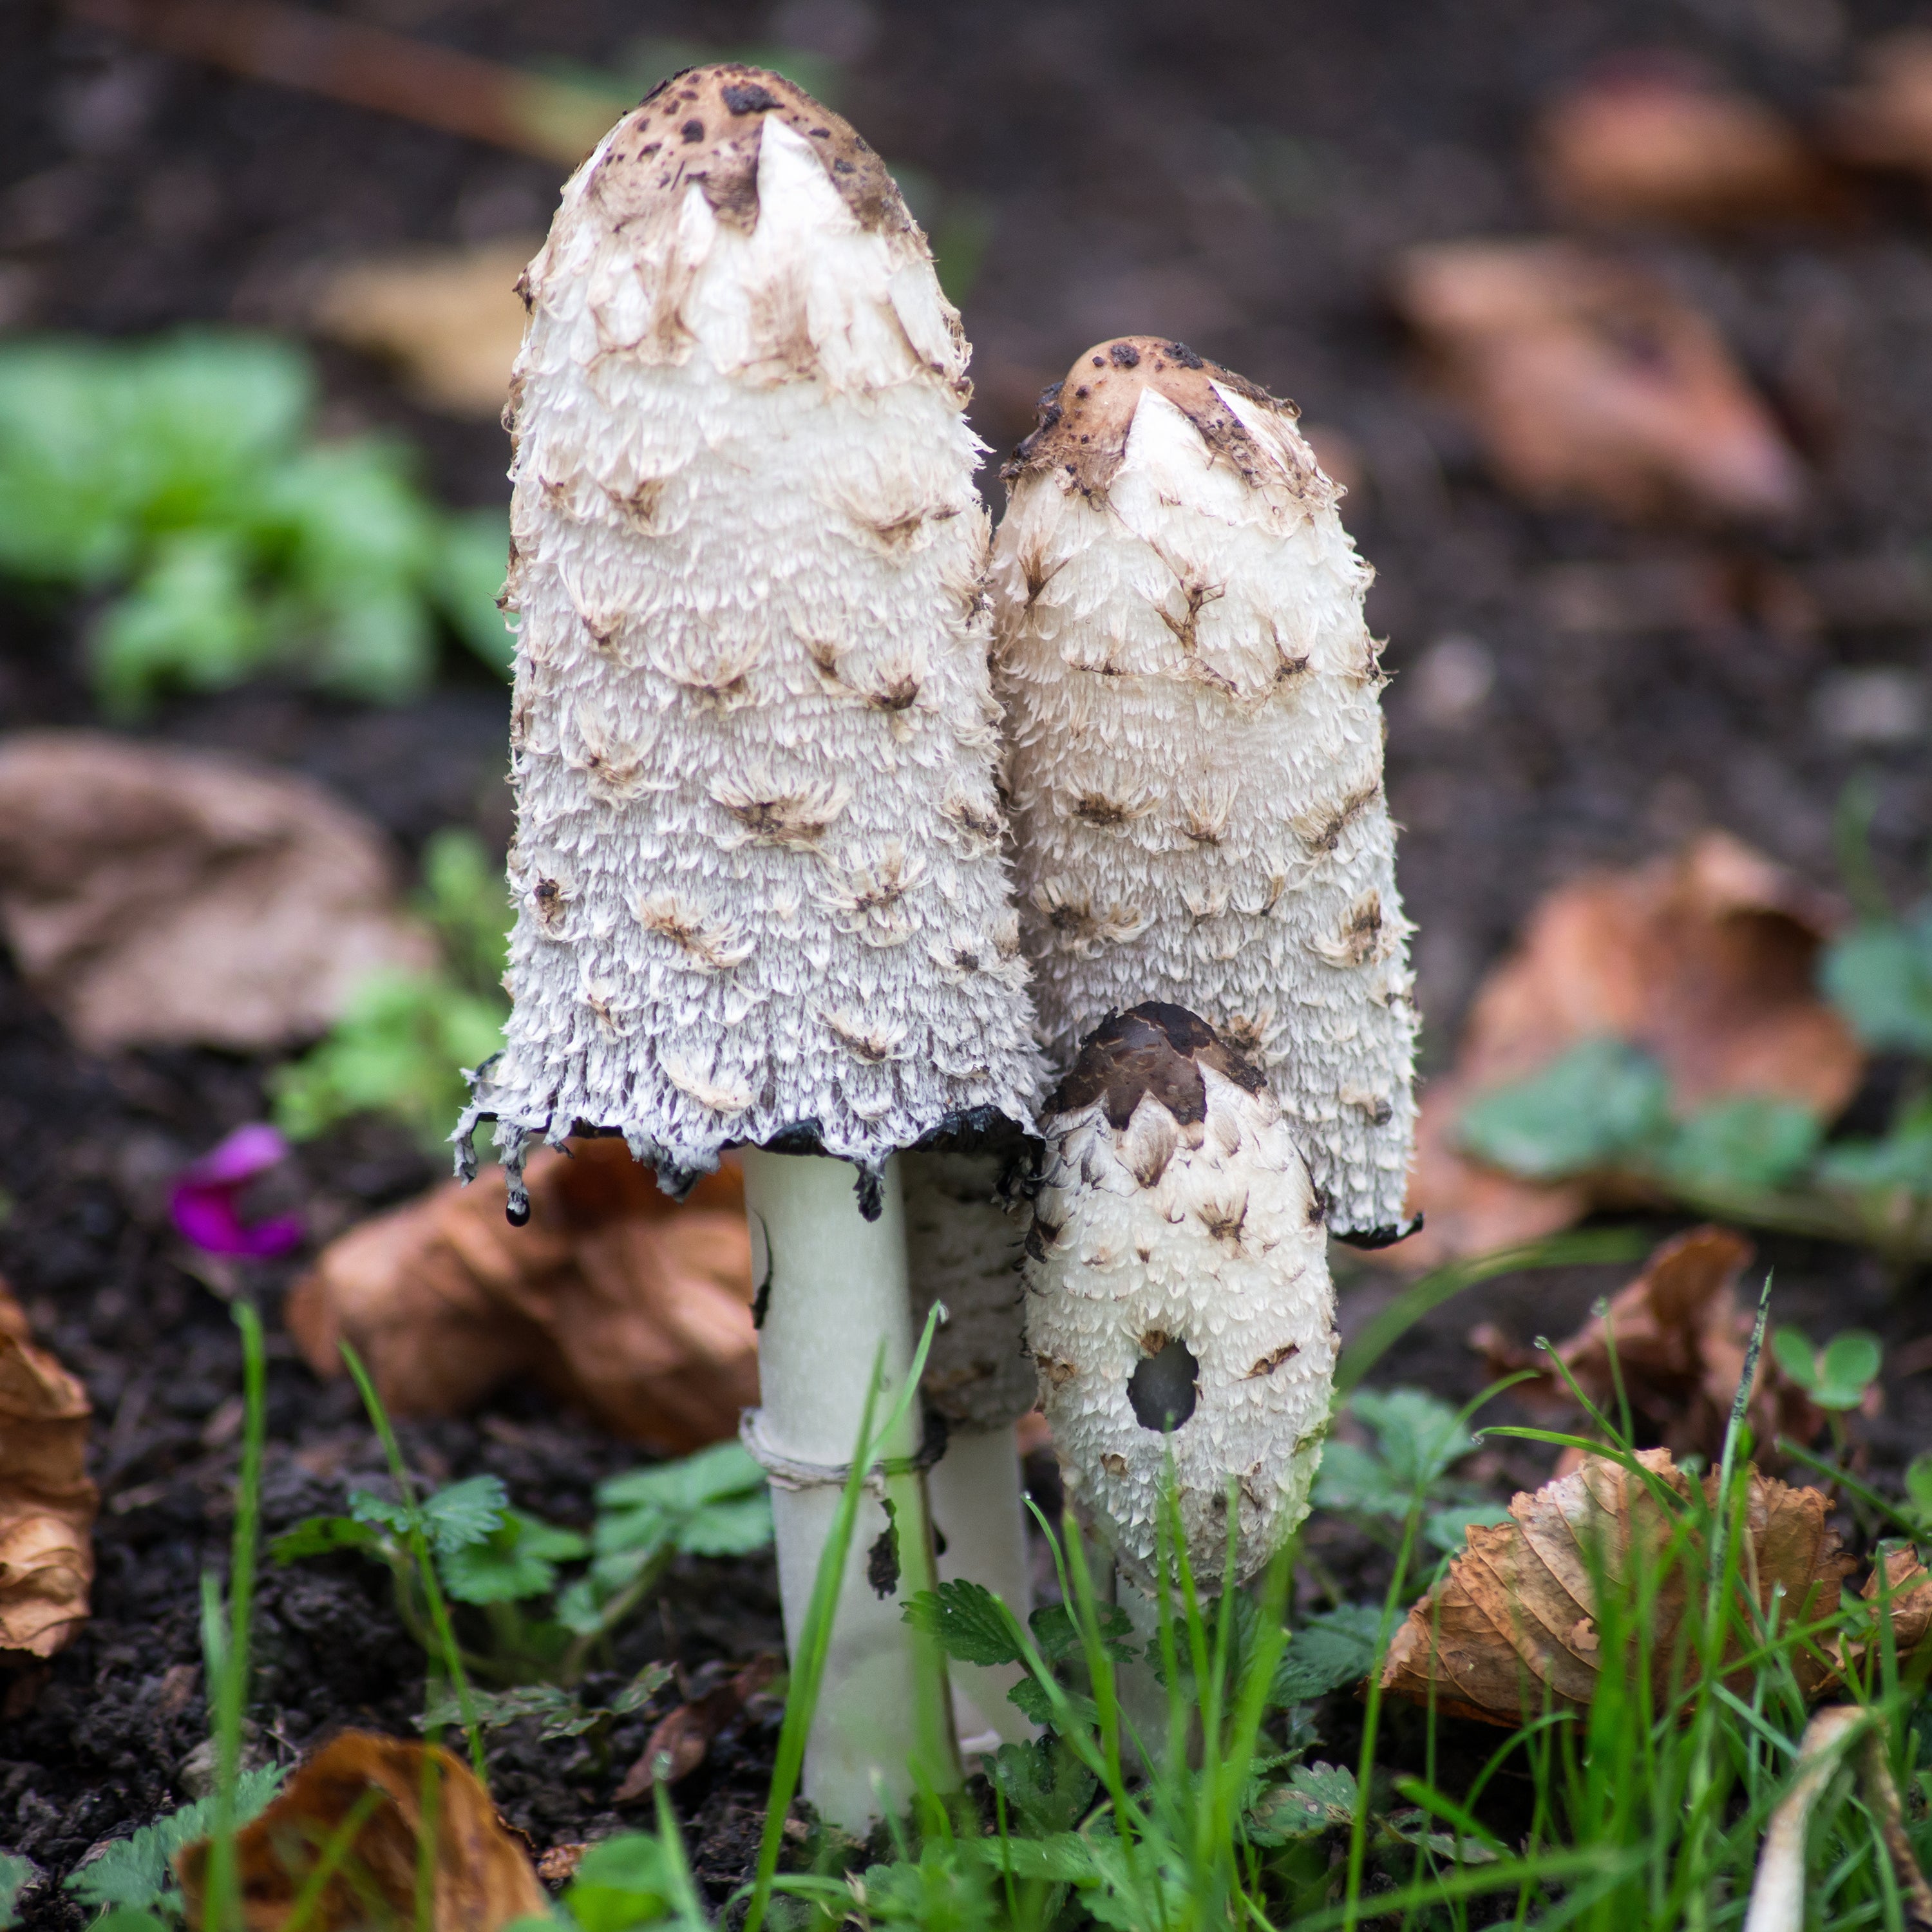 The Living Soil: Fungi